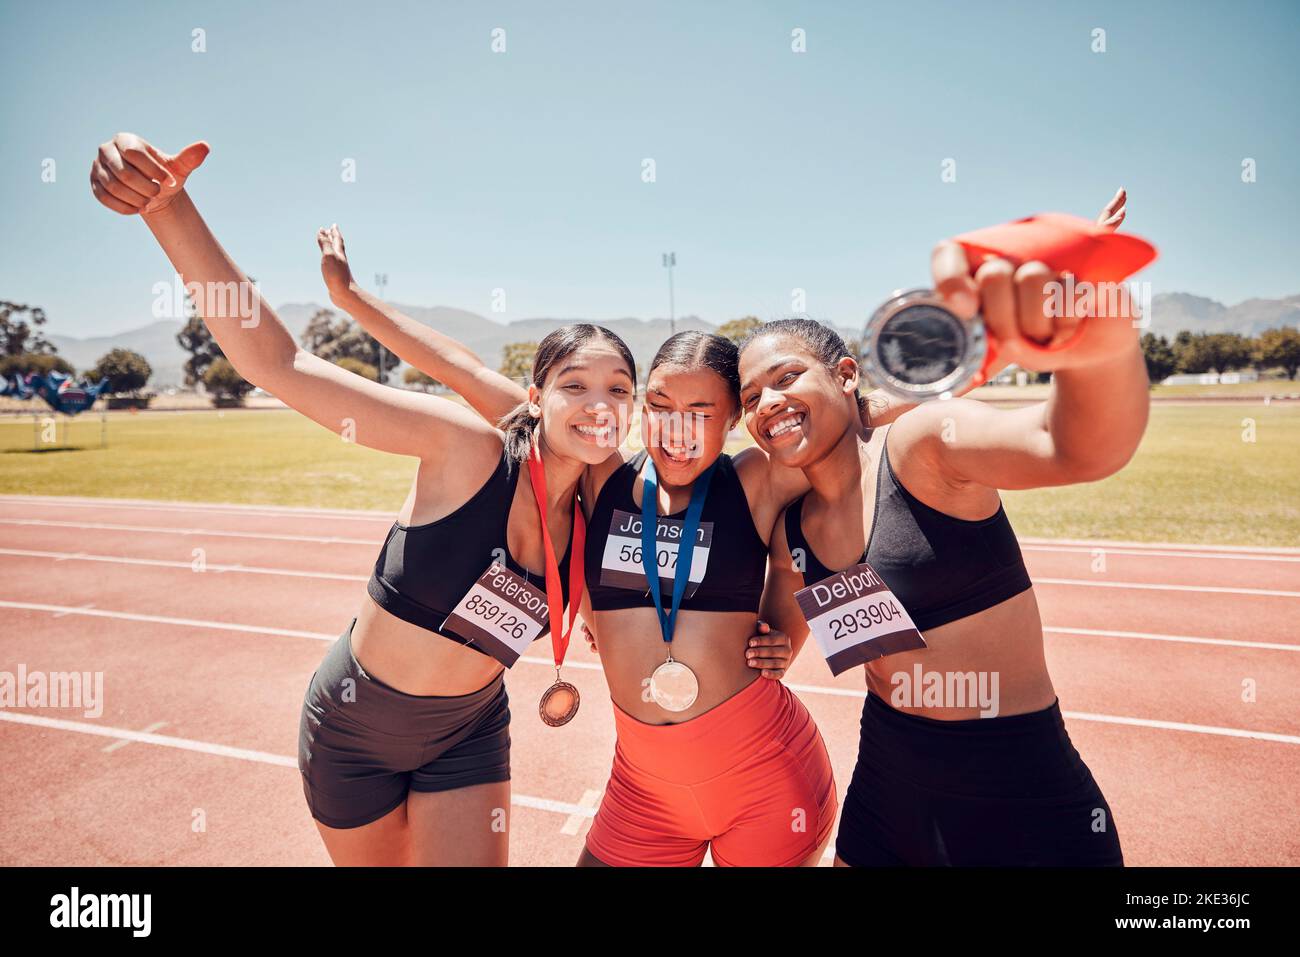 Medaillen-, Gewinnerinnen- und Sportlerinnen bei einem Stadionsport, Wettkampf oder Rennerfolg in Gruppenporträt. Läufer, Team oder Freunde mit Gold-Auszeichnung Stockfoto